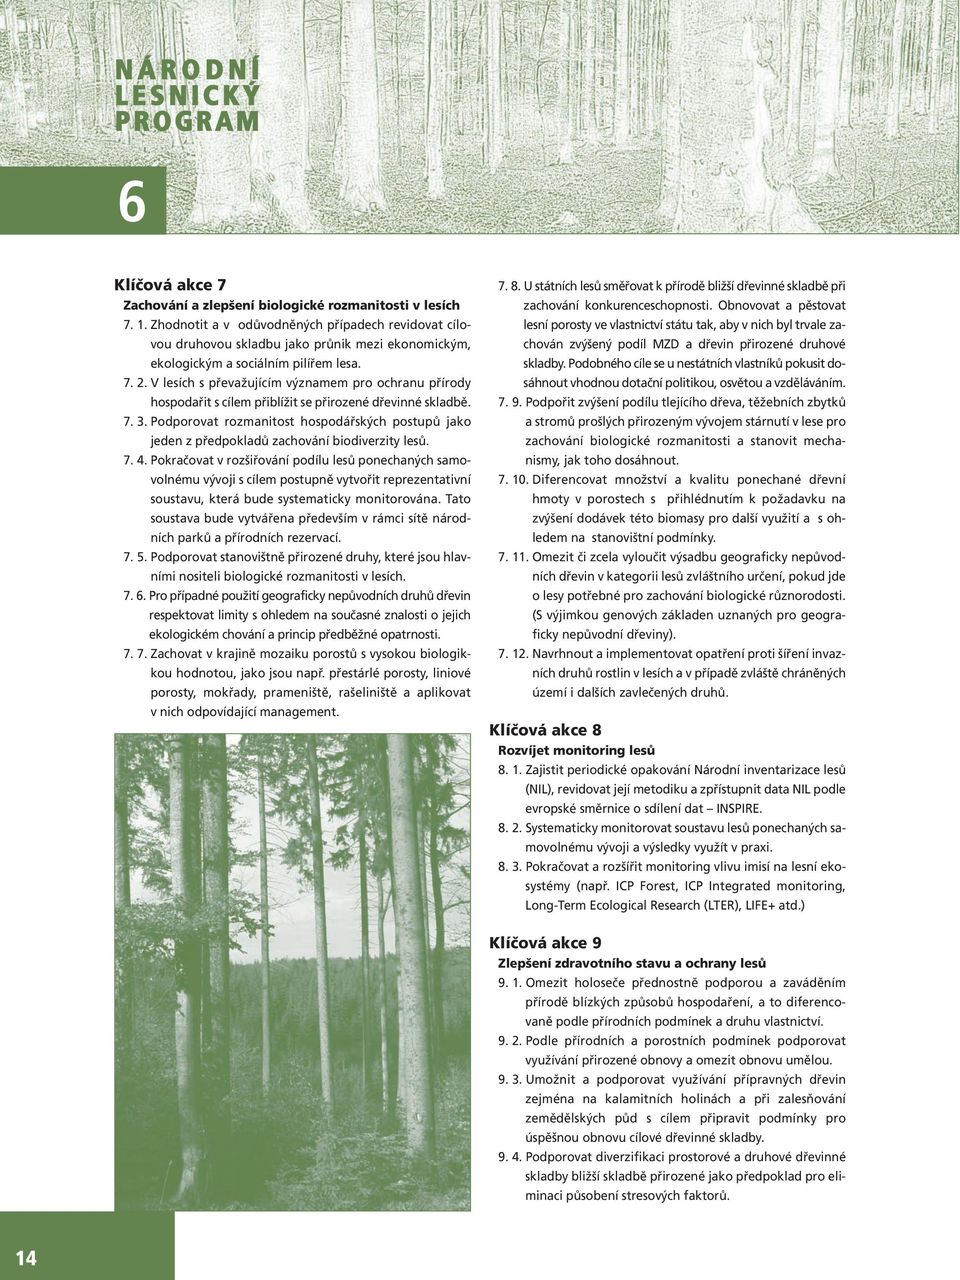 V lesích s převažujícím významem pro ochranu přírody hospodařit s cílem přiblížit se přirozené dřevinné skladbě. 7. 3.